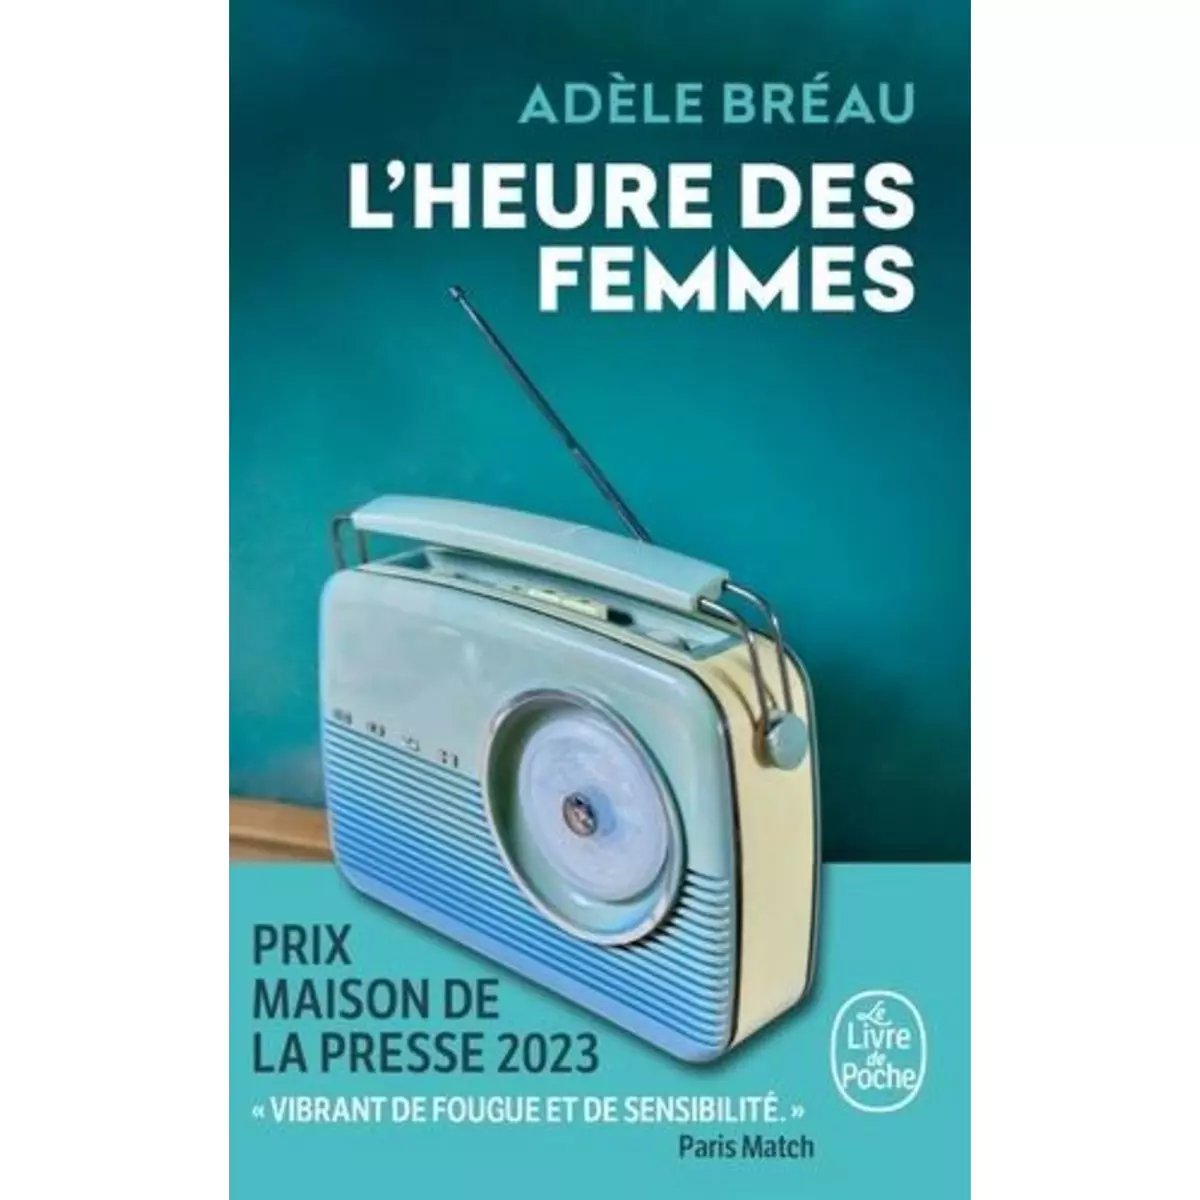  L'HEURE DES FEMMES, Bréau Adèle